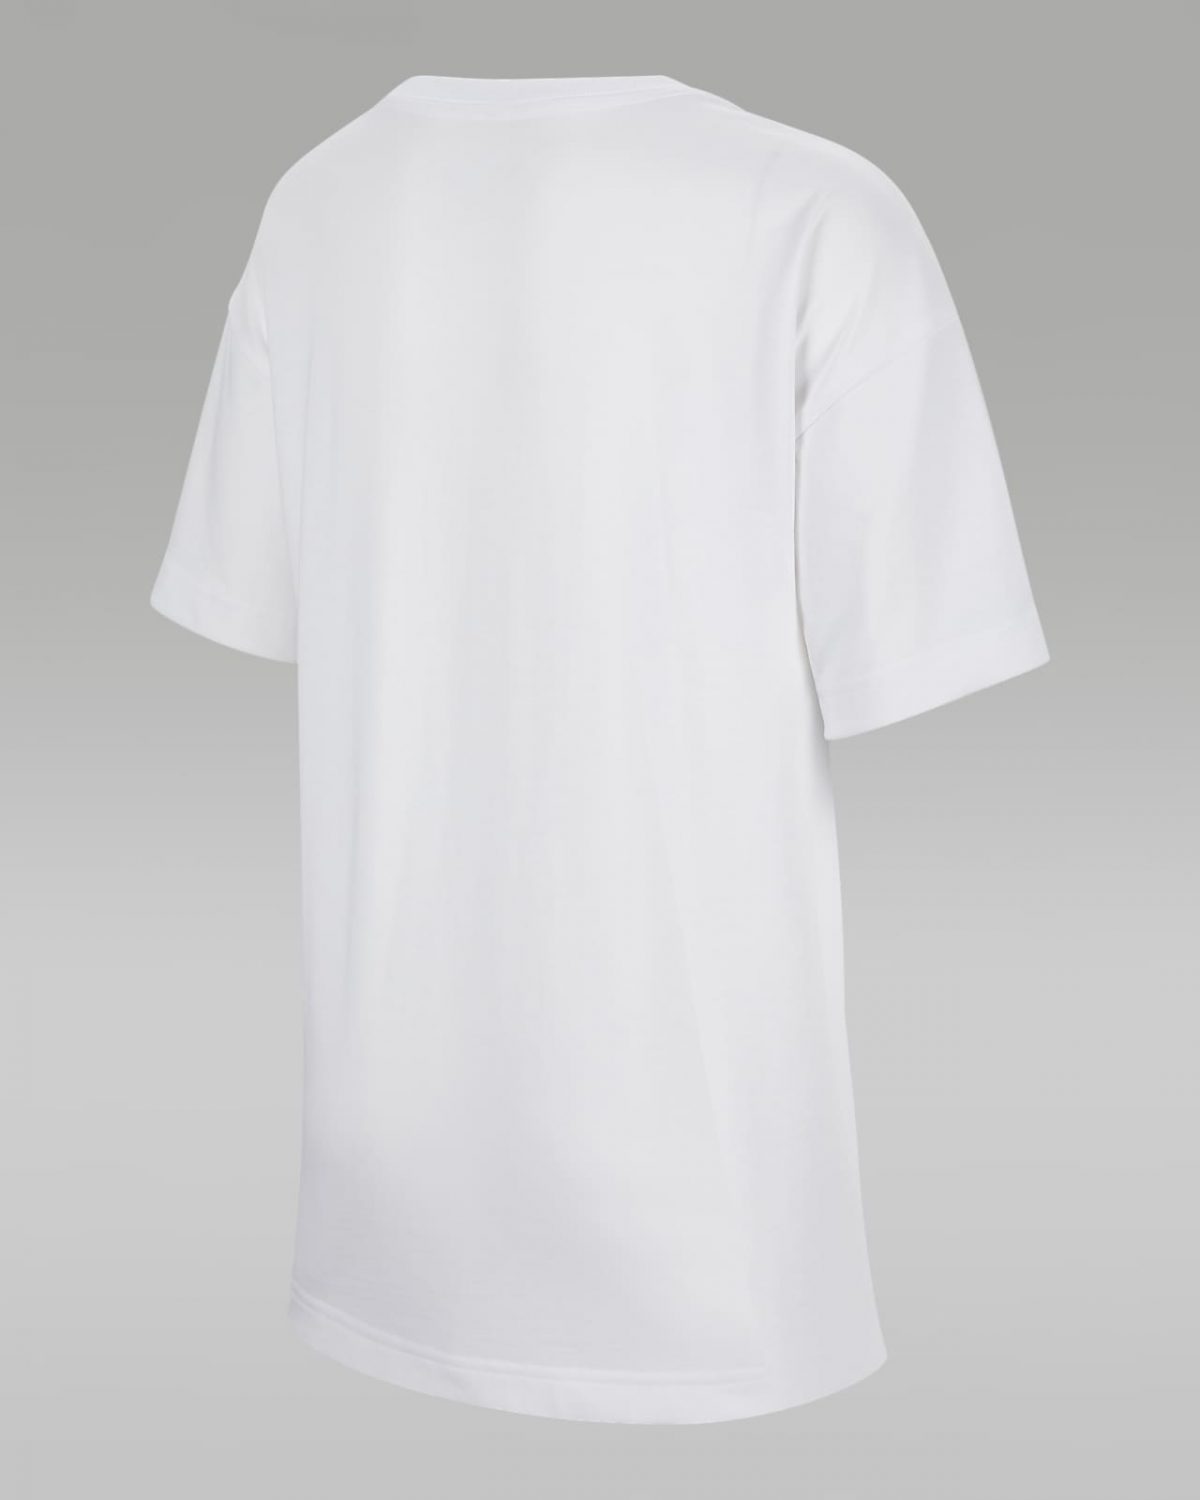 Детская футболка nike Air Jordan 1 белая фотография